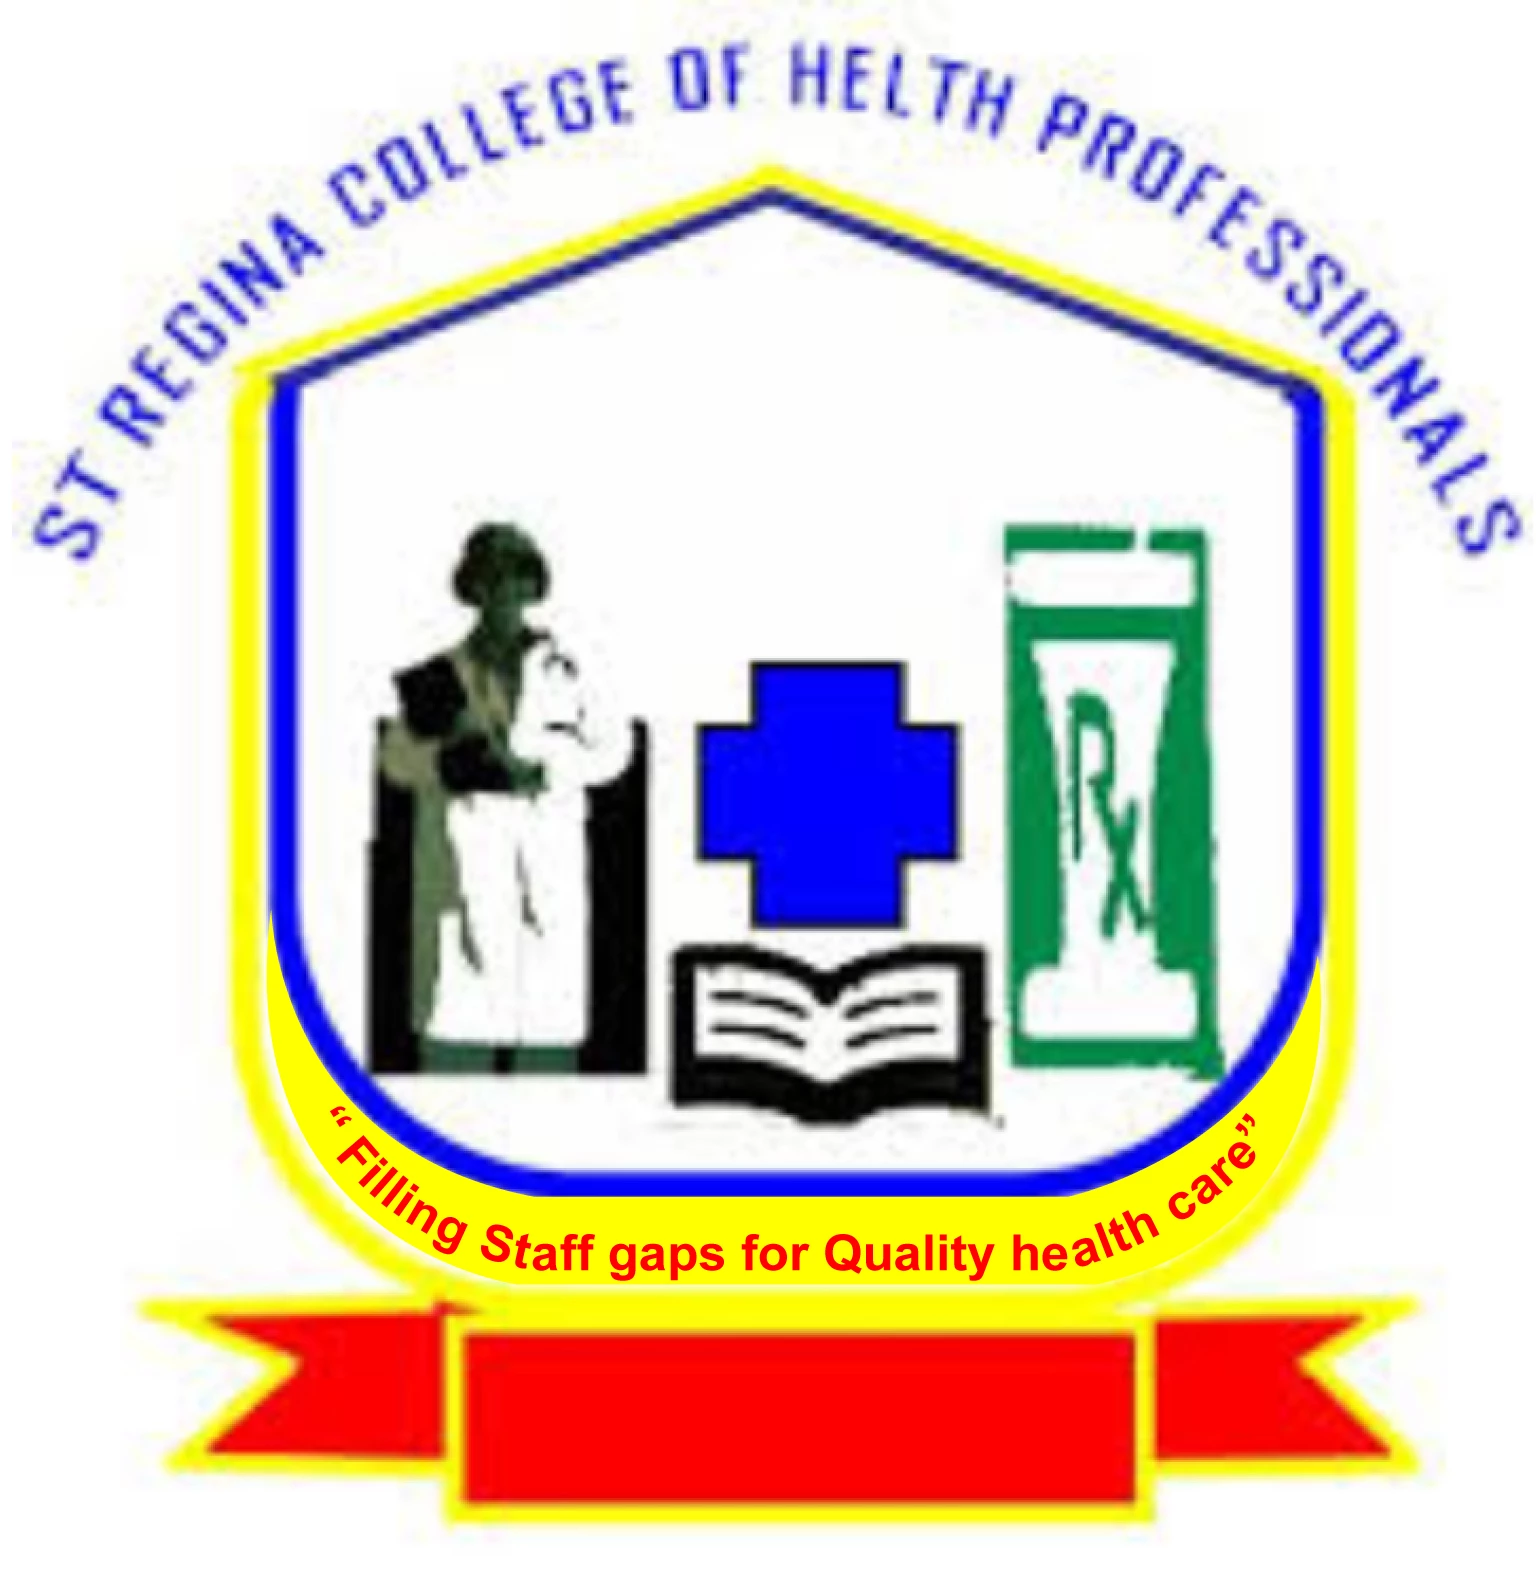 St.Regina College of Health Professionals-Hoima